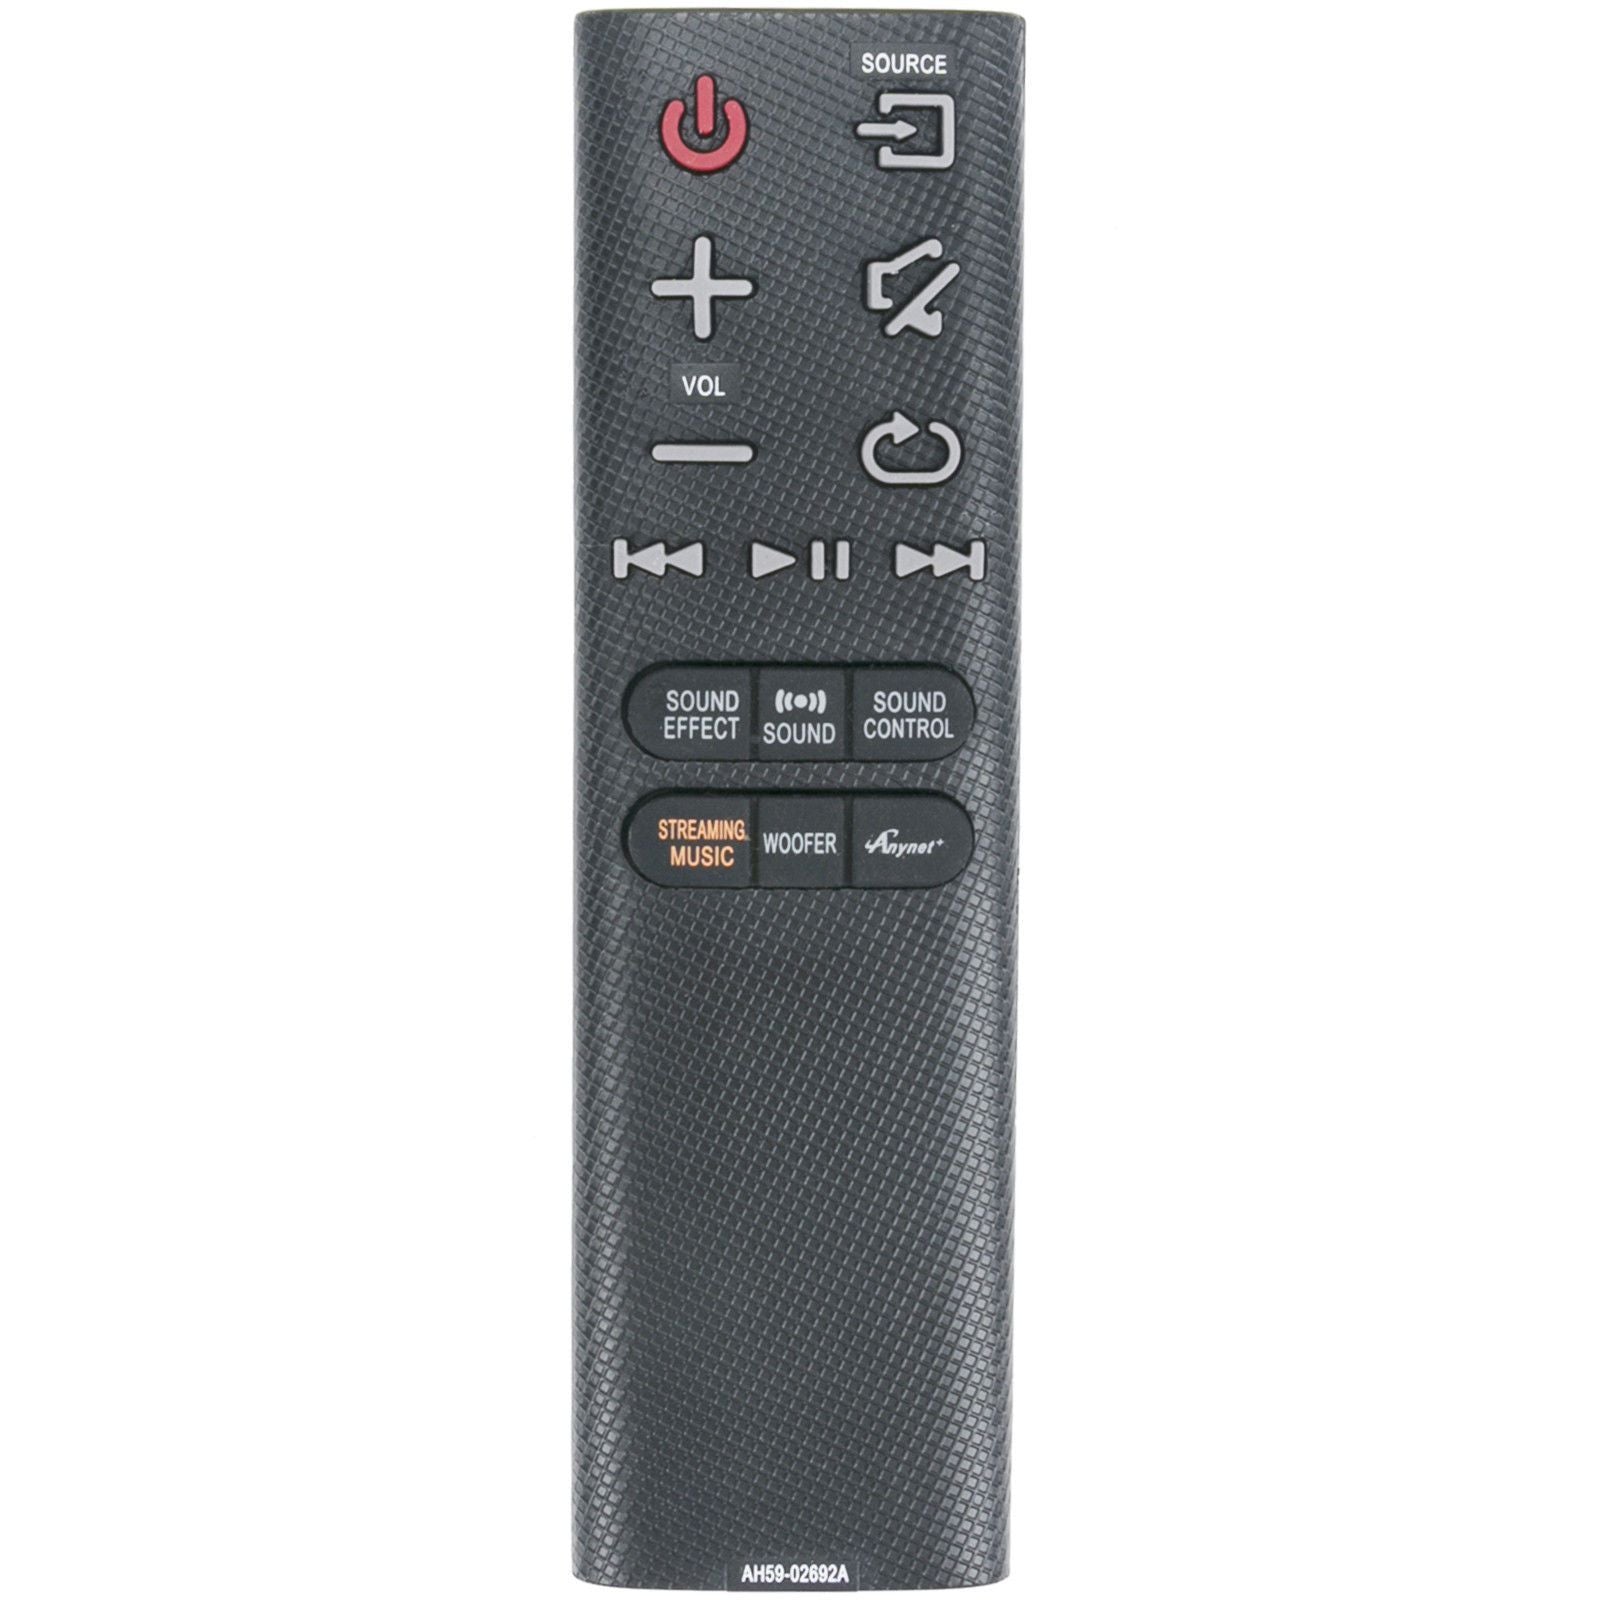 AH59-02692A Replacement Remote Control for Samsung Soundbar HW-J7500 HW-J7501 HW-J8500